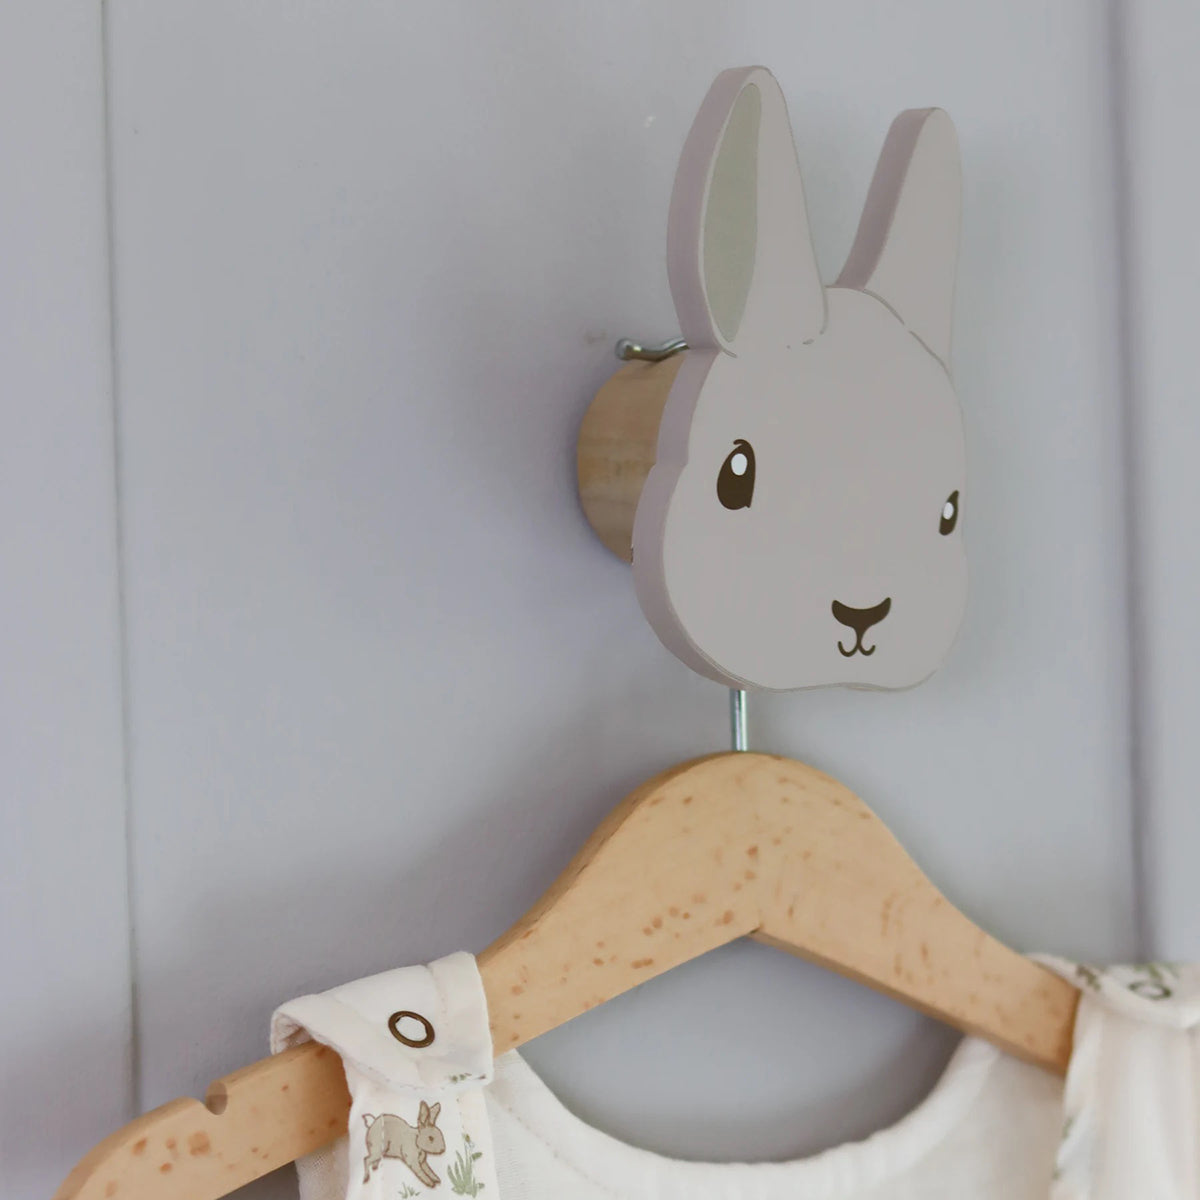 De That’s Mine houten muurhaakjes bunny 2-pack zijn het perfecte accessoire voor op een mooie babykamer of kinderkamer. Deze kapstokjes zijn niet alleen handig, maar ook nog eens heel erg mooi. VanZus